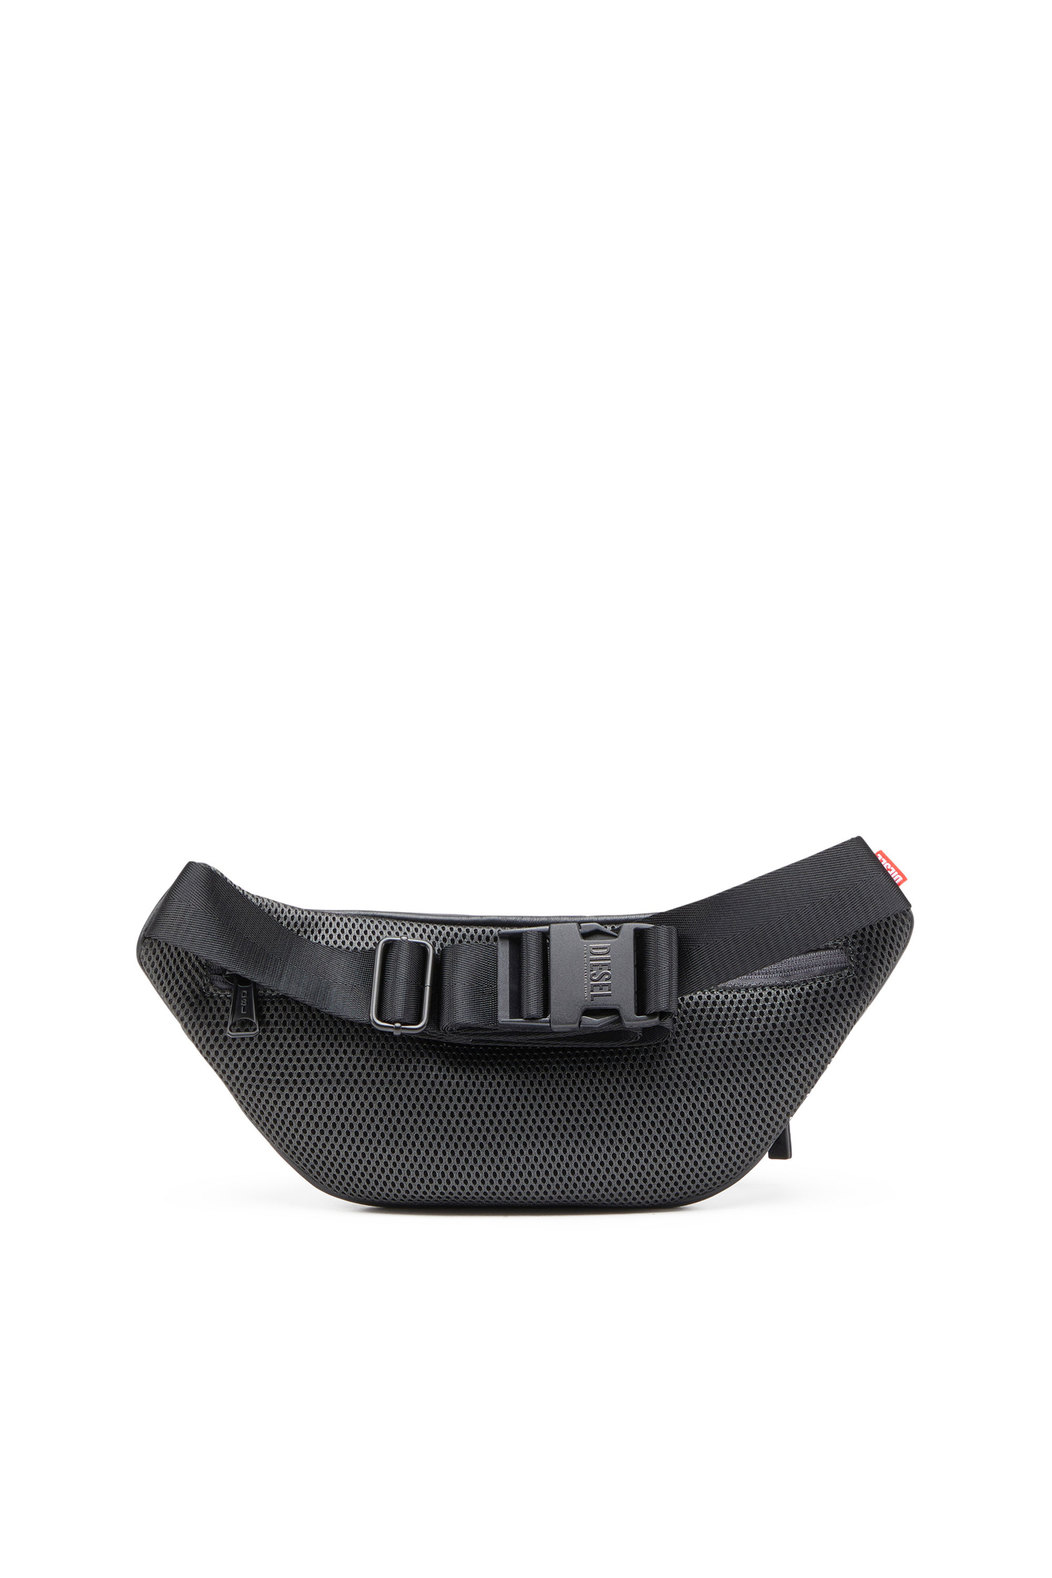 Rave Beltbag - Leather belt bag with embossed D logo